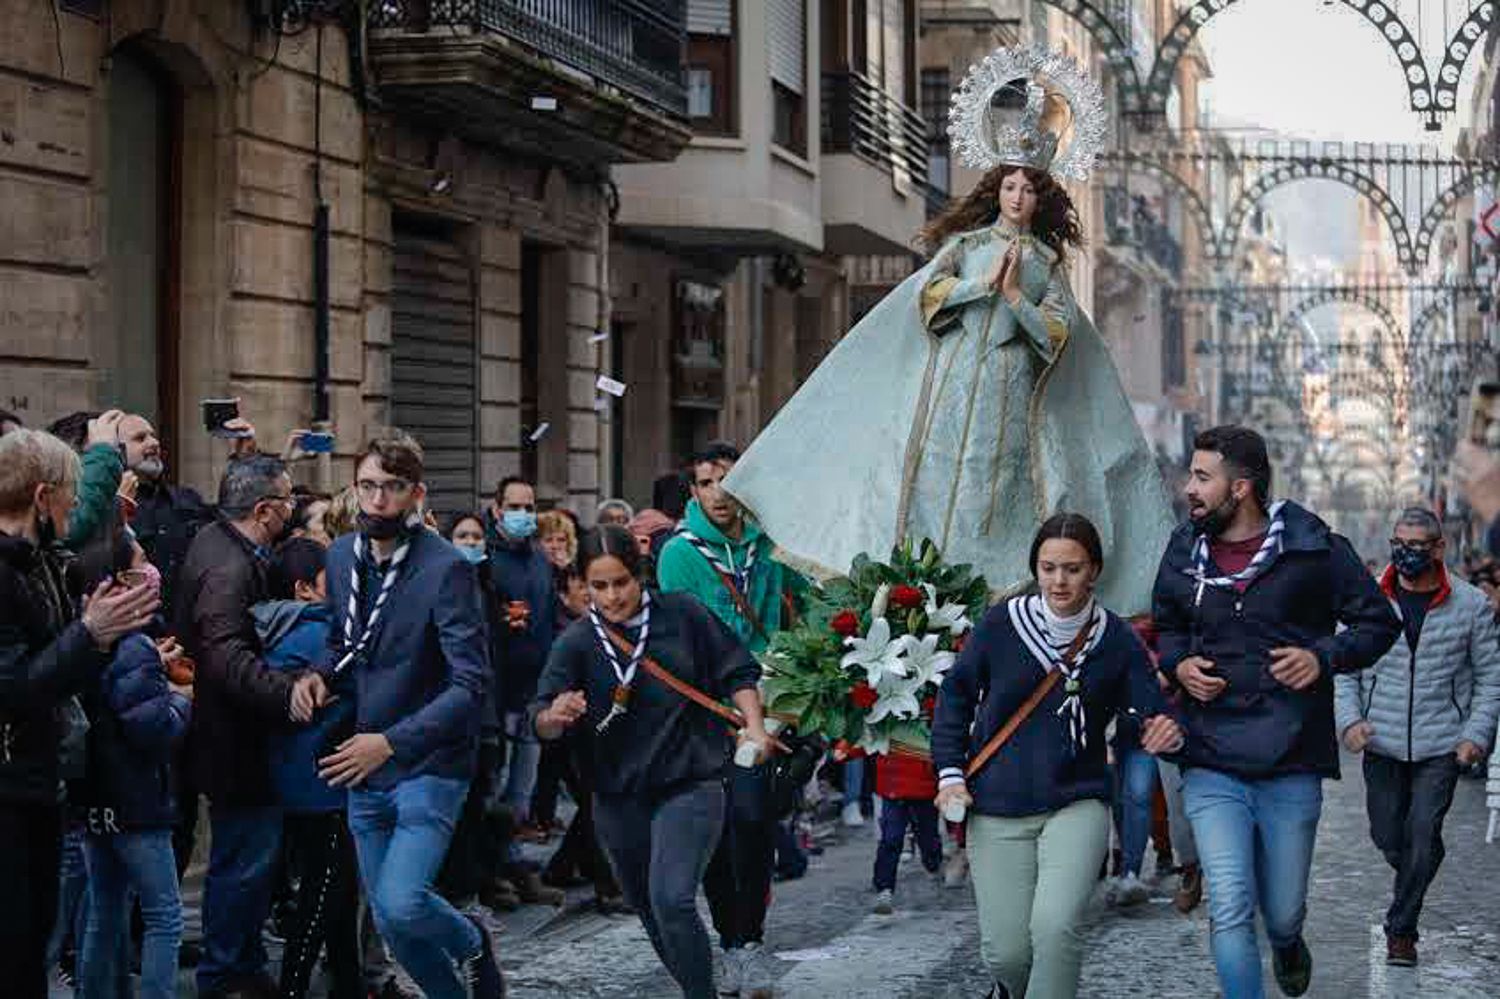 La procesión de Els Xiulets de Alcoi, en imágenes